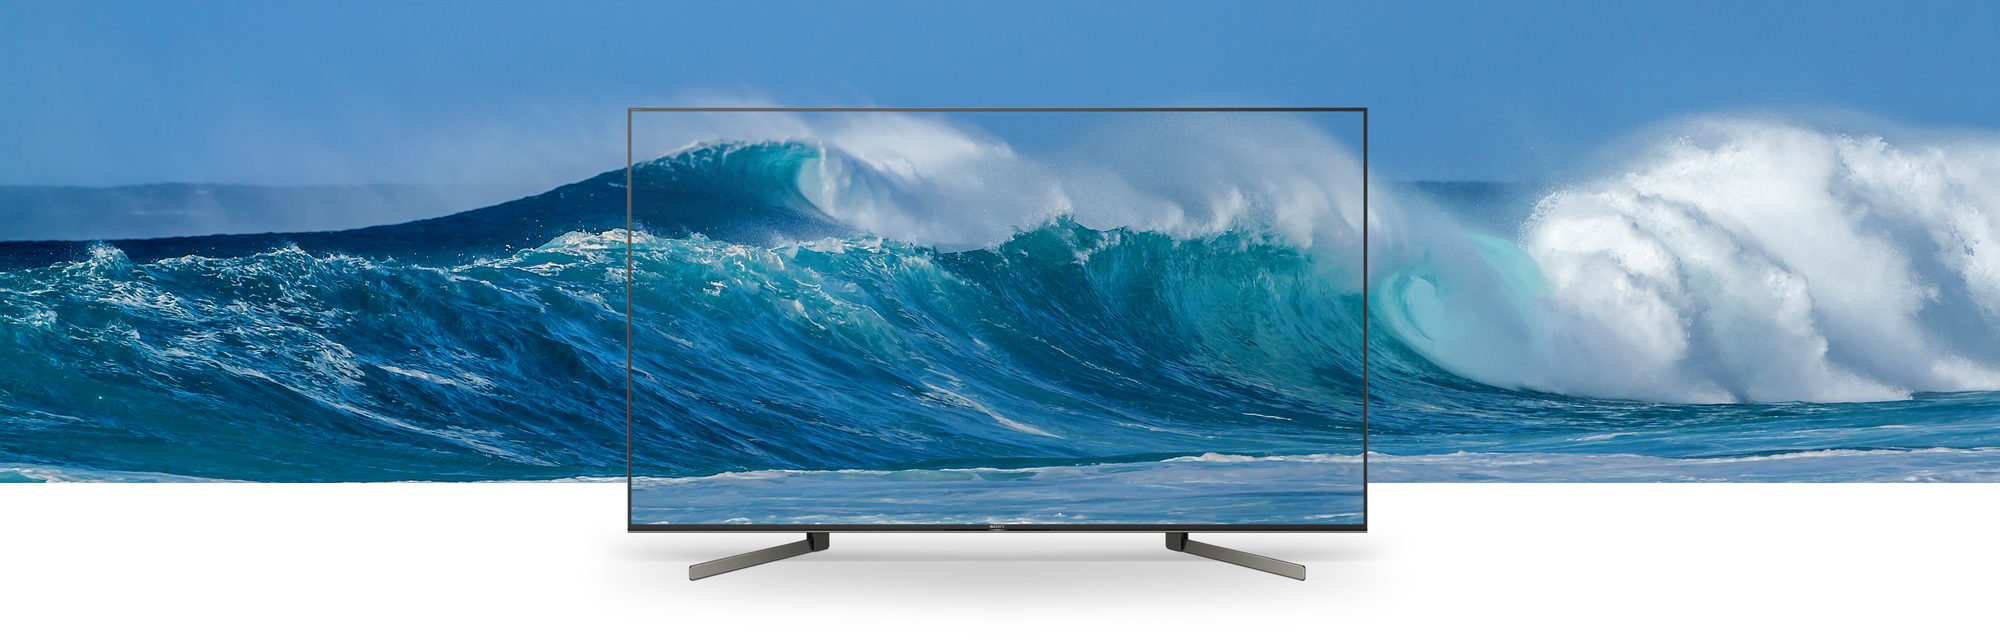 تلویزیون 65X9500G به وسیله تکنولوژی Sound-from-Image میان تصویر و صدا هماهنگی را به وجود می آورد.